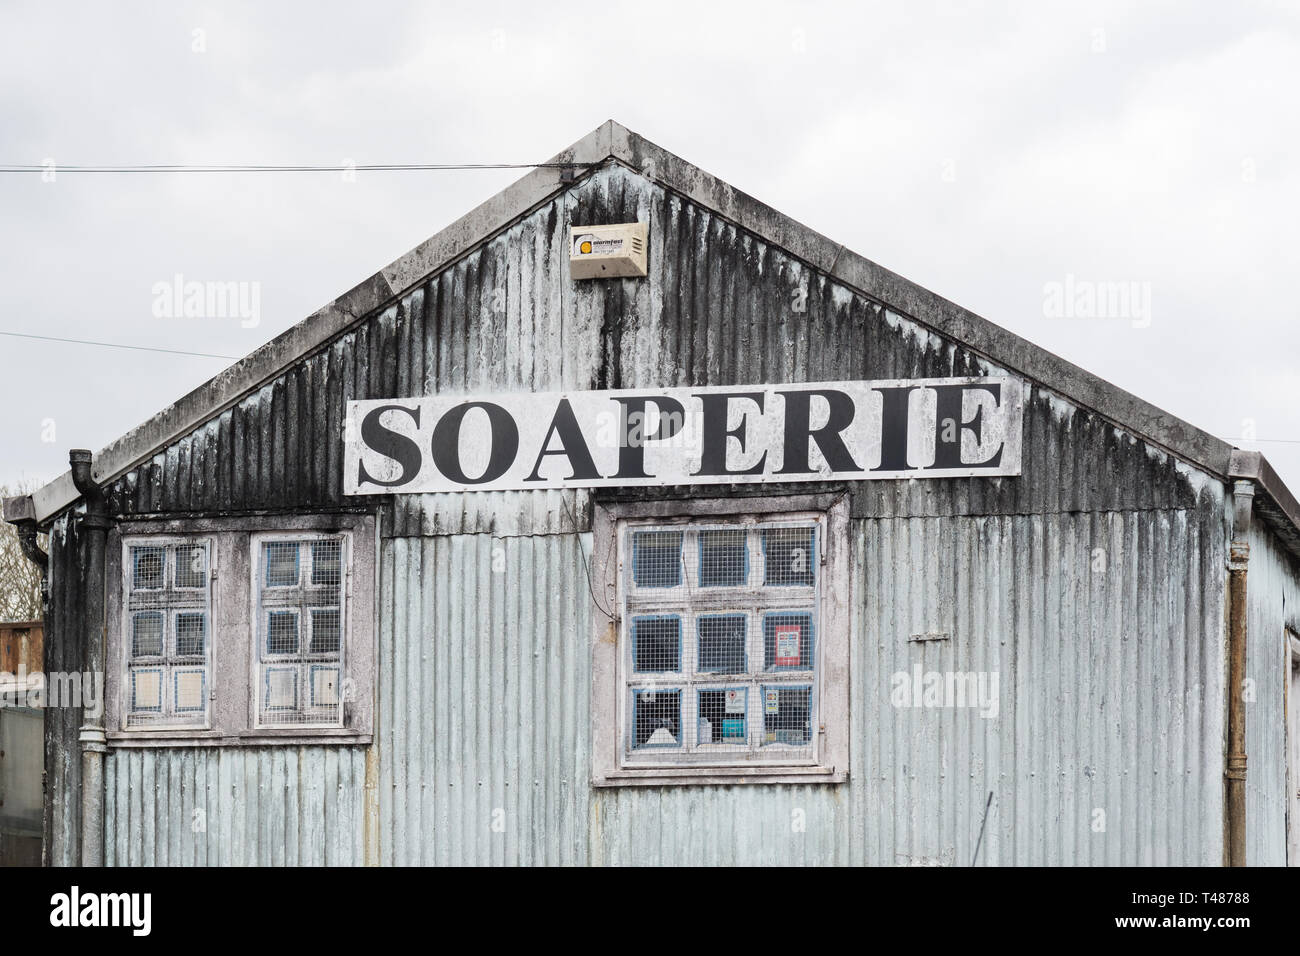 Le Caurnie Soaperie - les mondes plus vieux procédé à froid soapmaker - Kirkintilloch, Ecosse, Royaume-Uni Banque D'Images